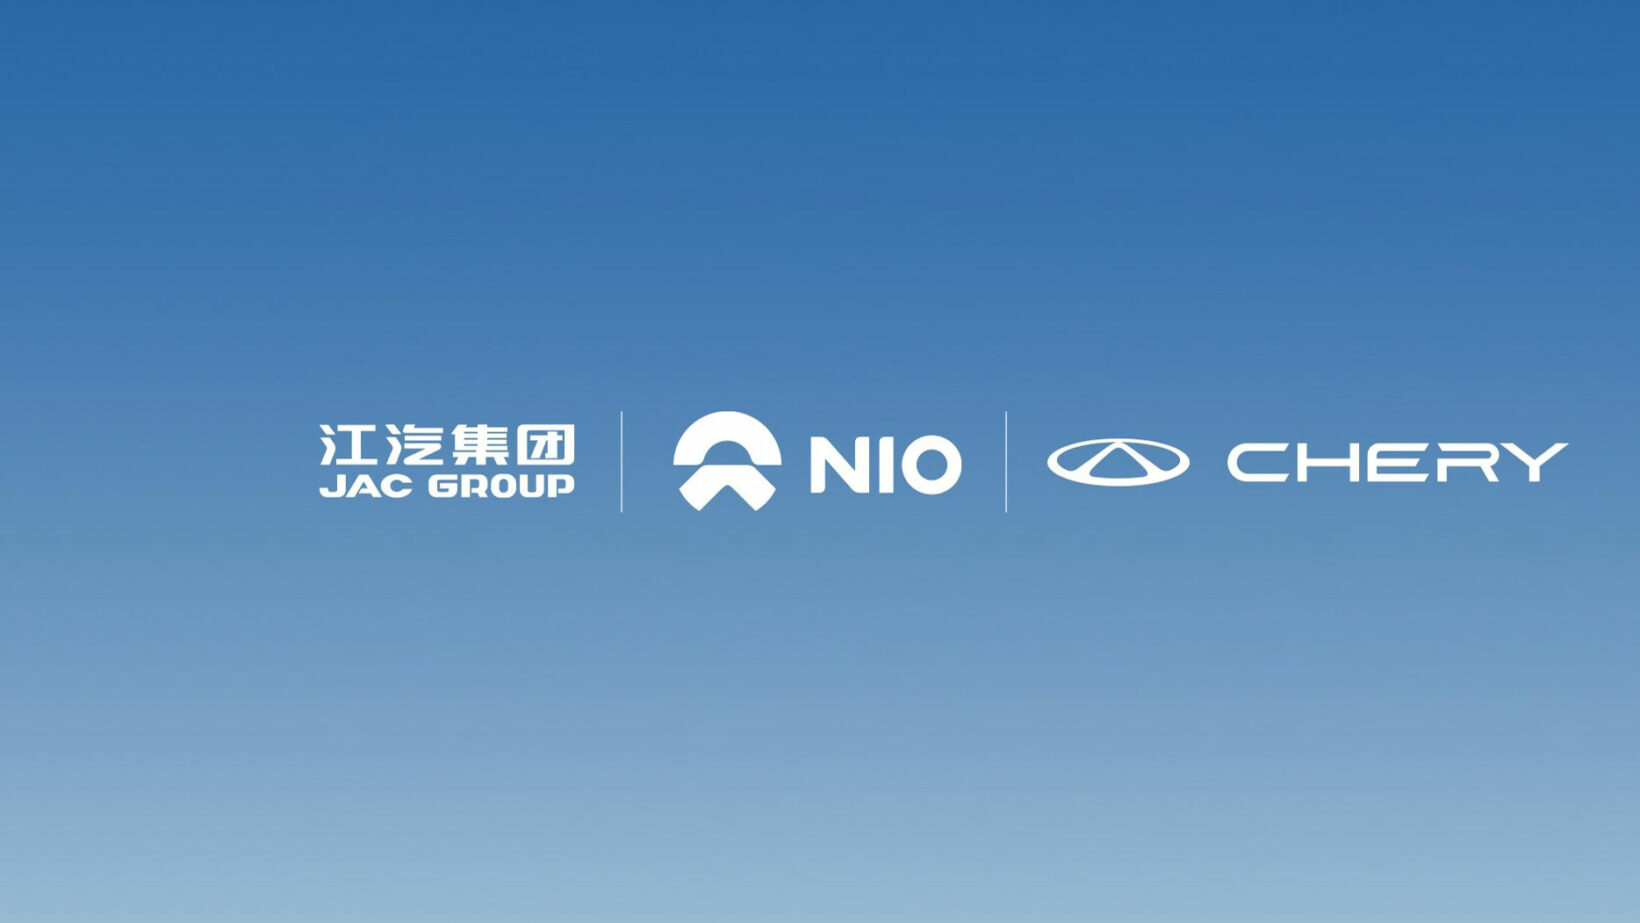 Nio électrifie l'industrie avec ses nouveaux alliés : JAC & Chery